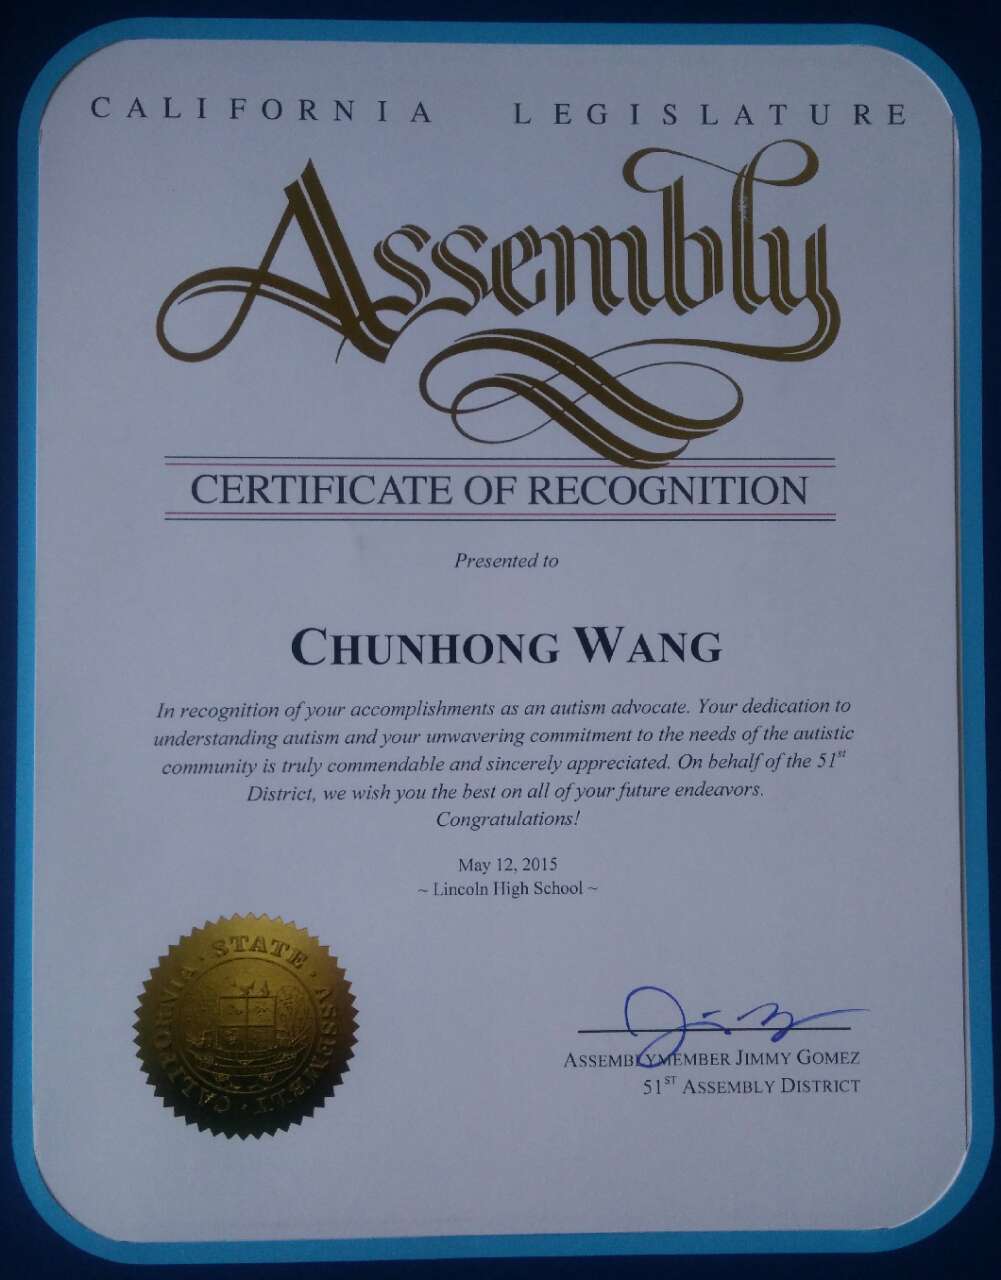 Certificate of Recognition of California Legislature